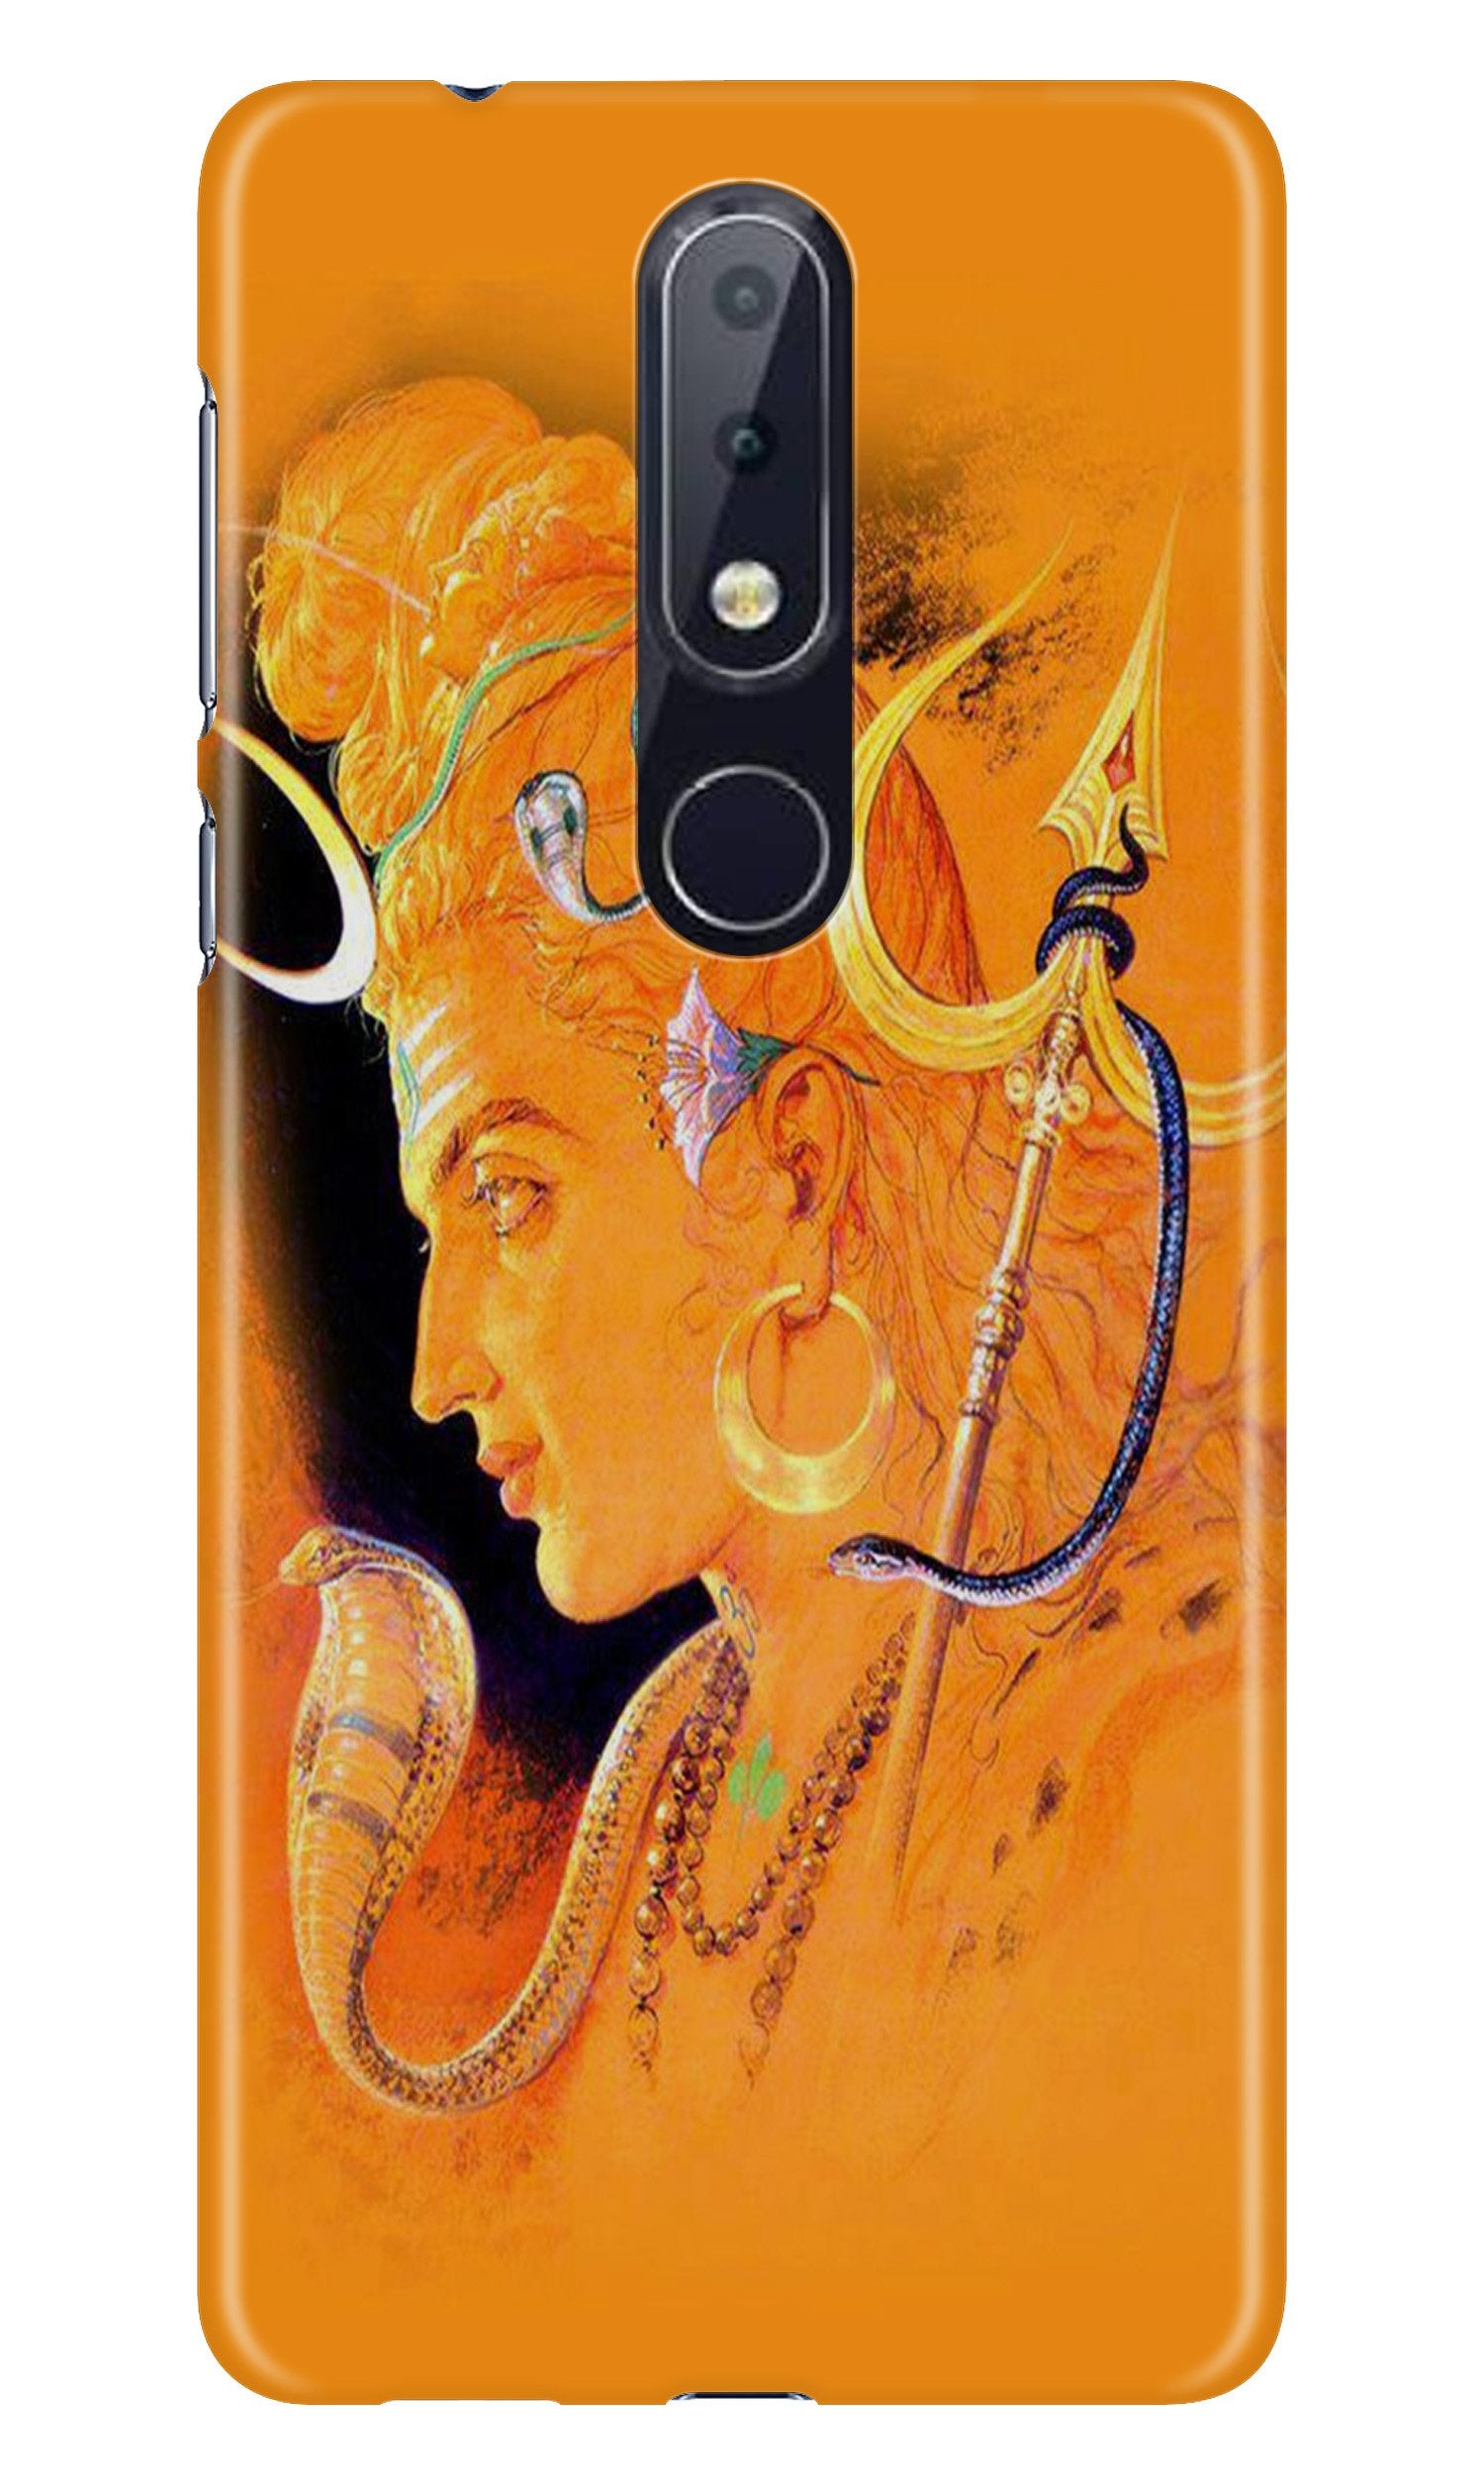 Lord Shiva Case for Nokia 6.1 Plus (Design No. 293)